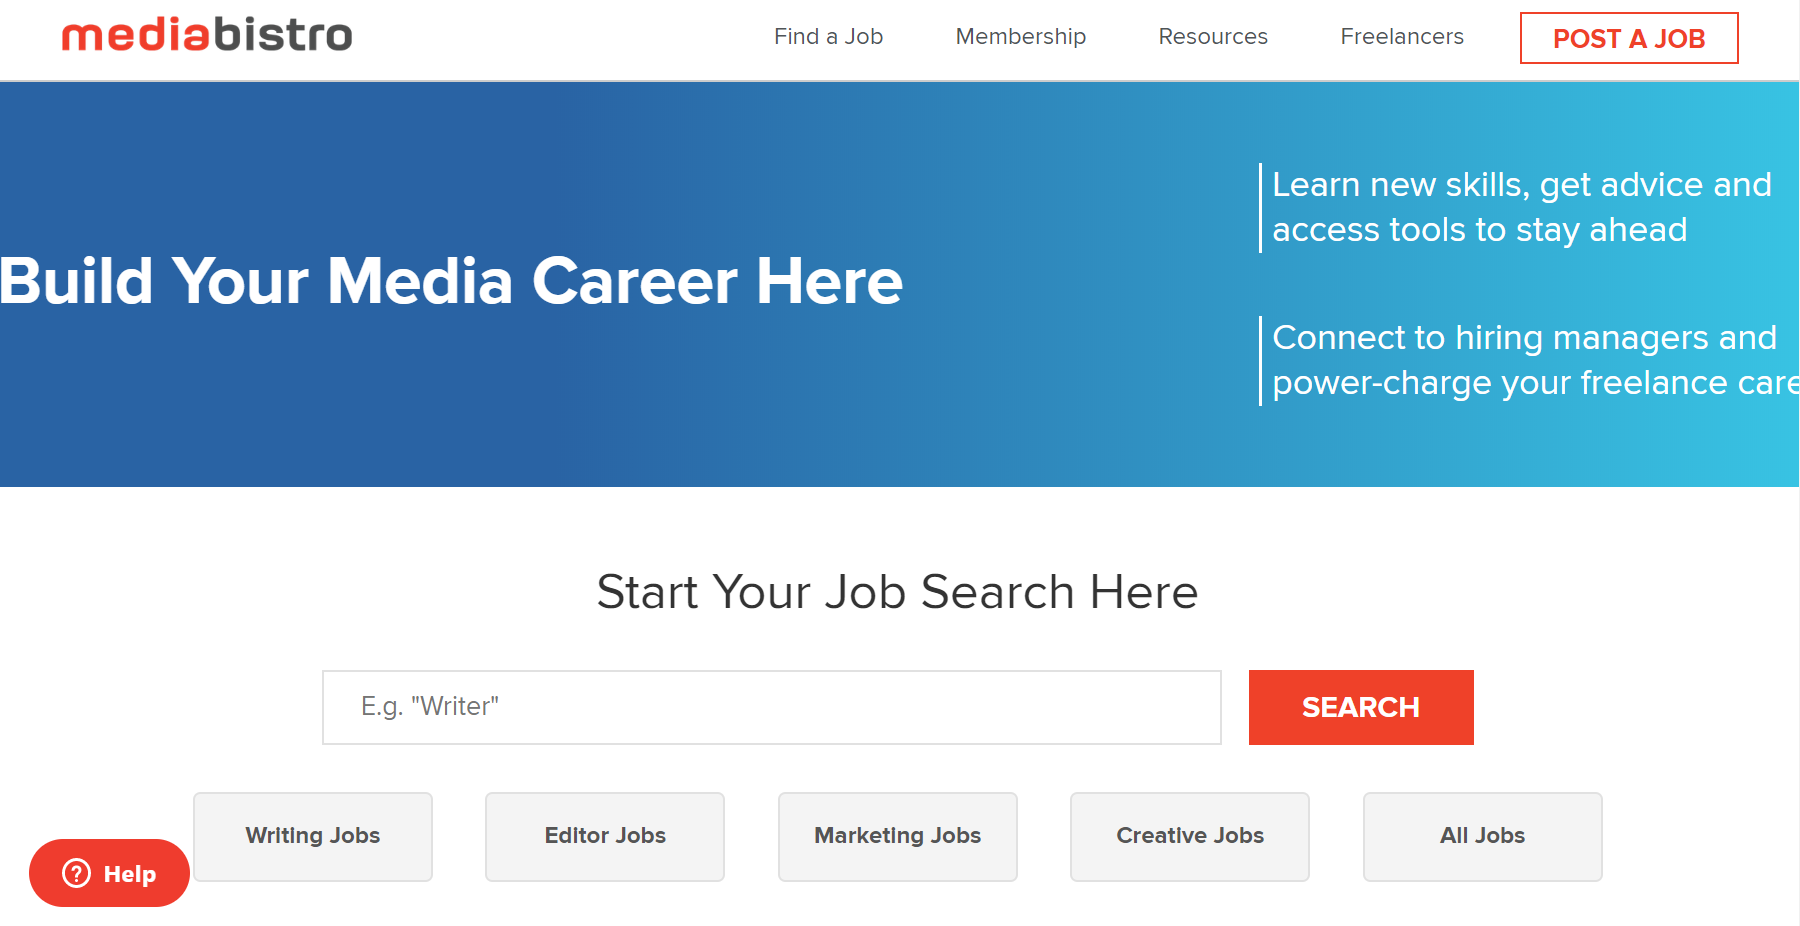 mediabistro job search